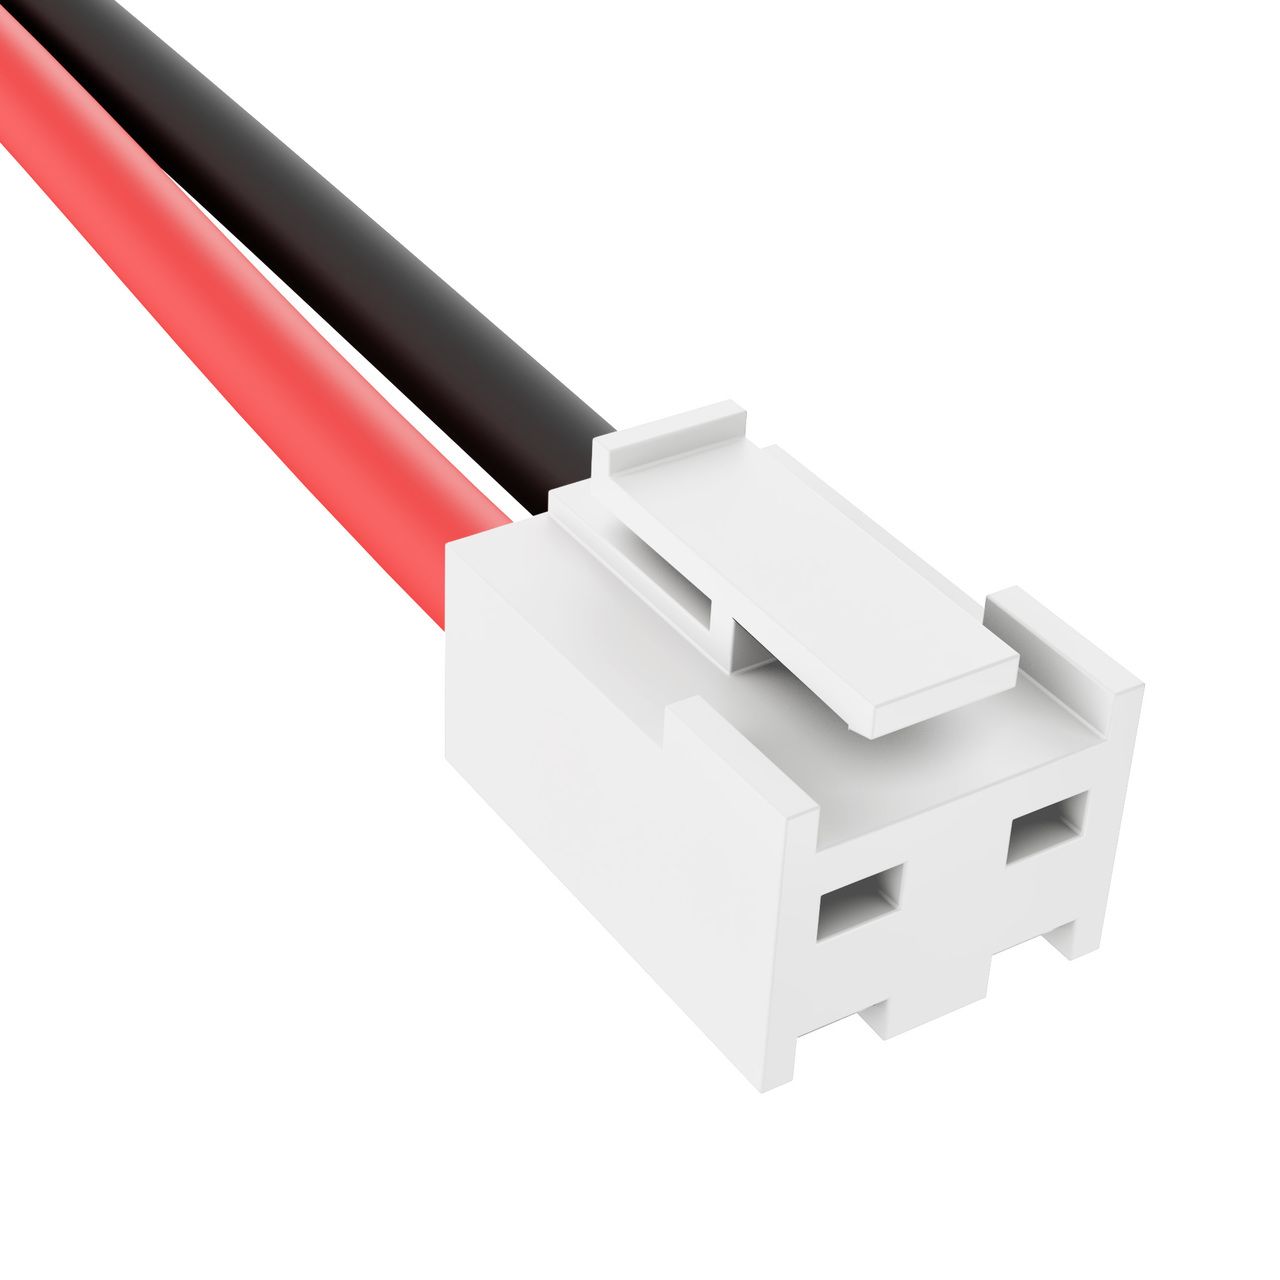 Connector JST-VH met clip slot 3.96mm pitch 2-pin female met 30cm kabel 22AWG zwart=links / rood=rechts